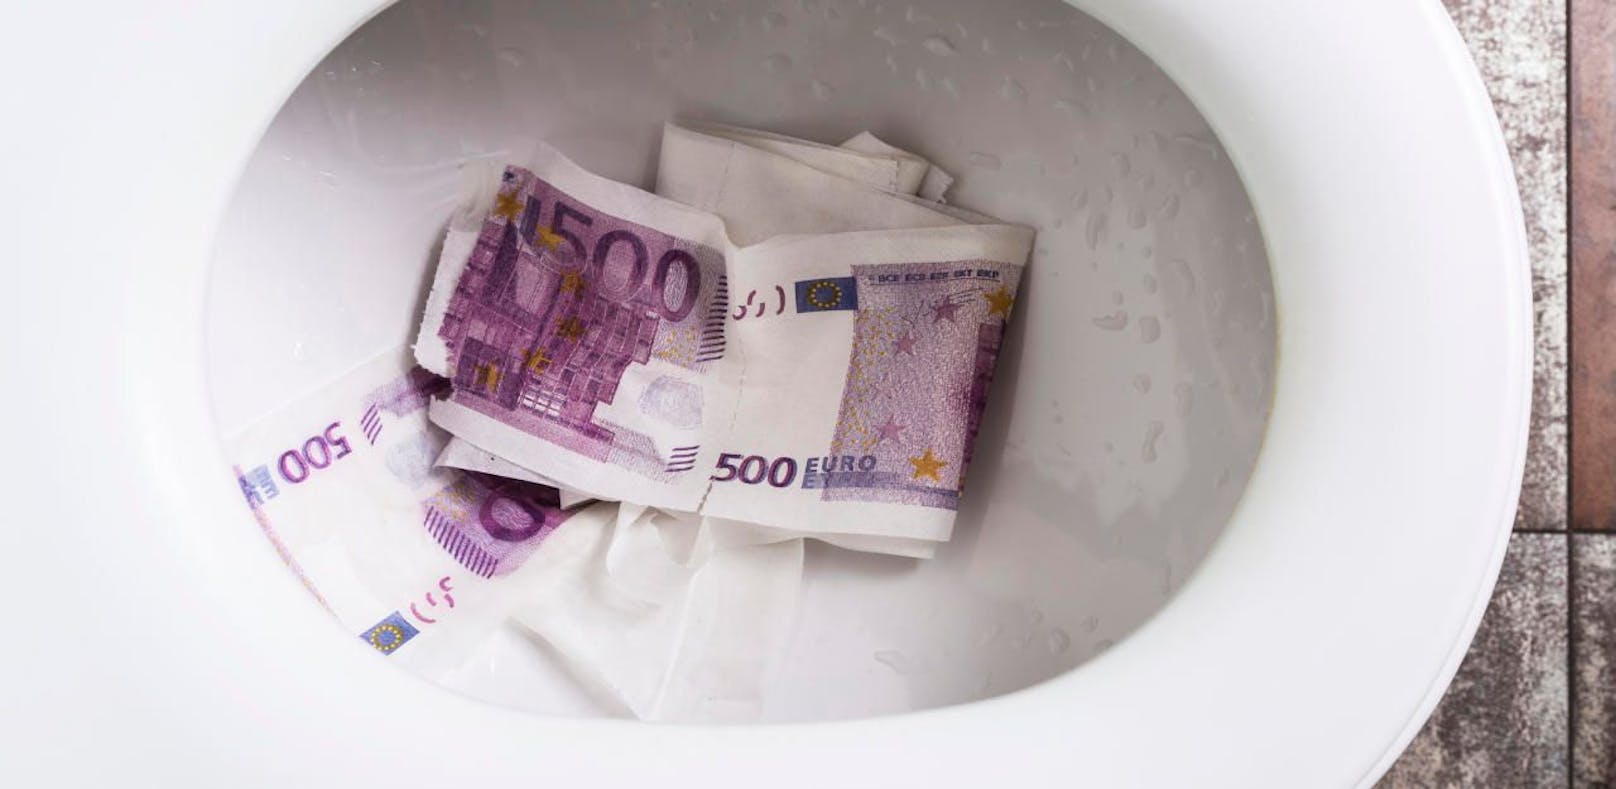 Mehrere zehntausend Euro in Toilette runtergespült